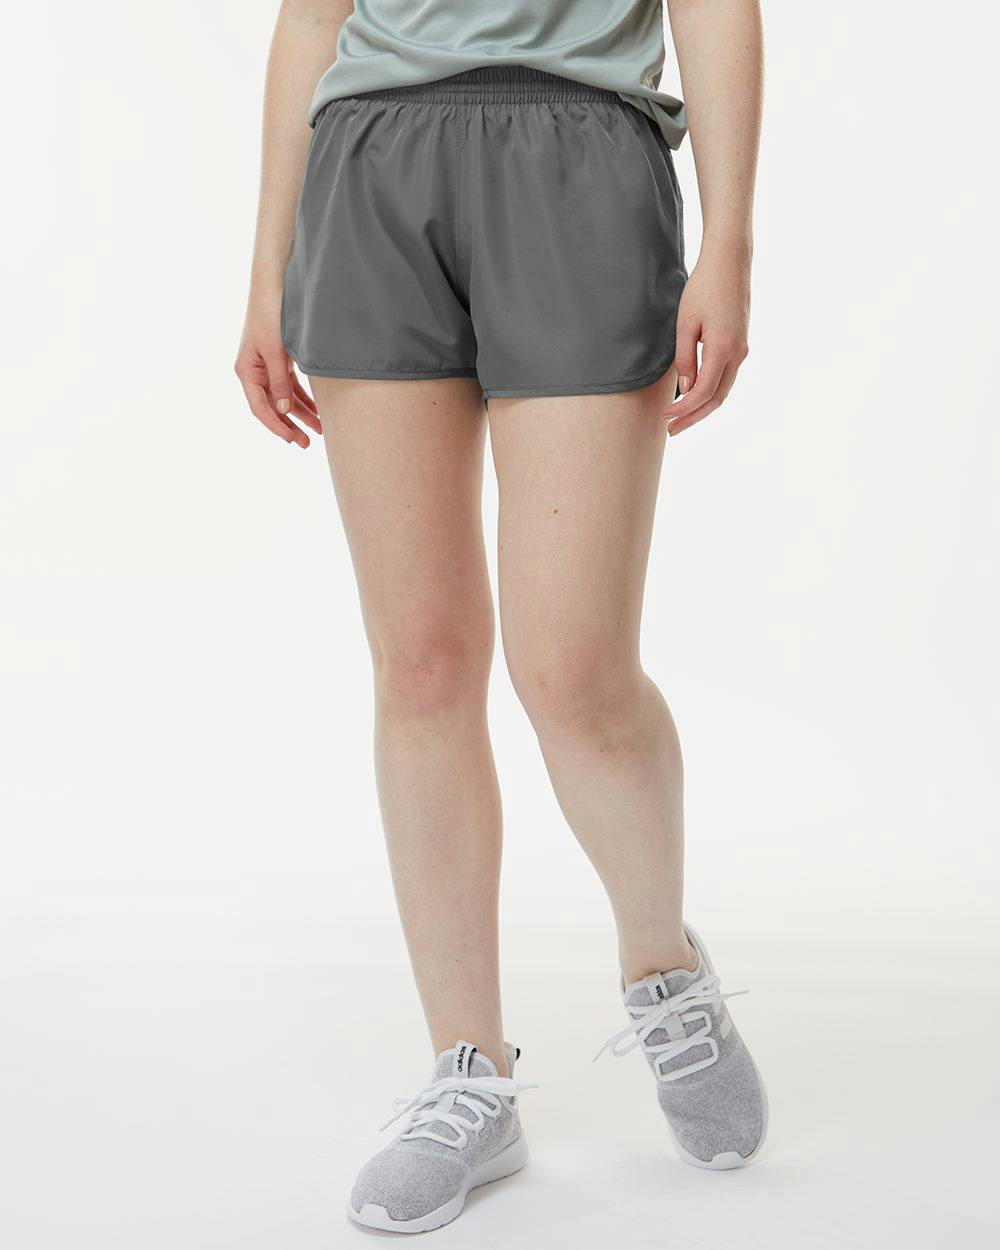 Image for Women's Wayfarer Shorts - 2430